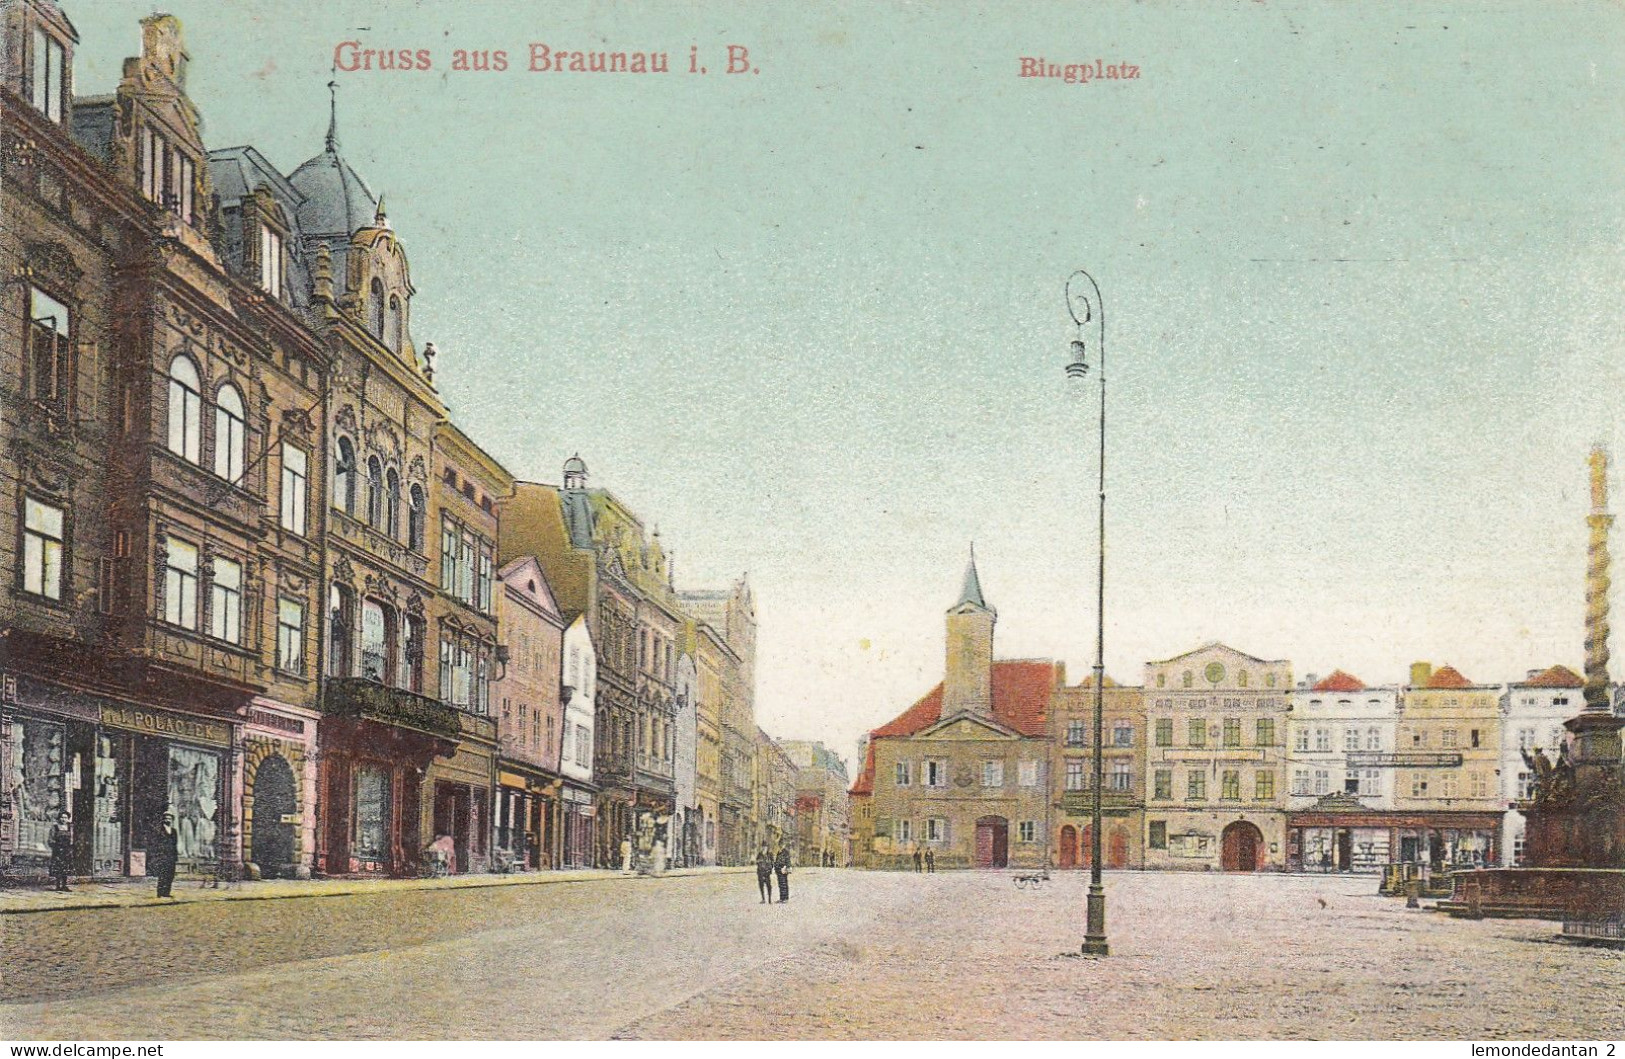 Gruss Aus Braunau I. B. - Ringplatz - Tschechische Republik